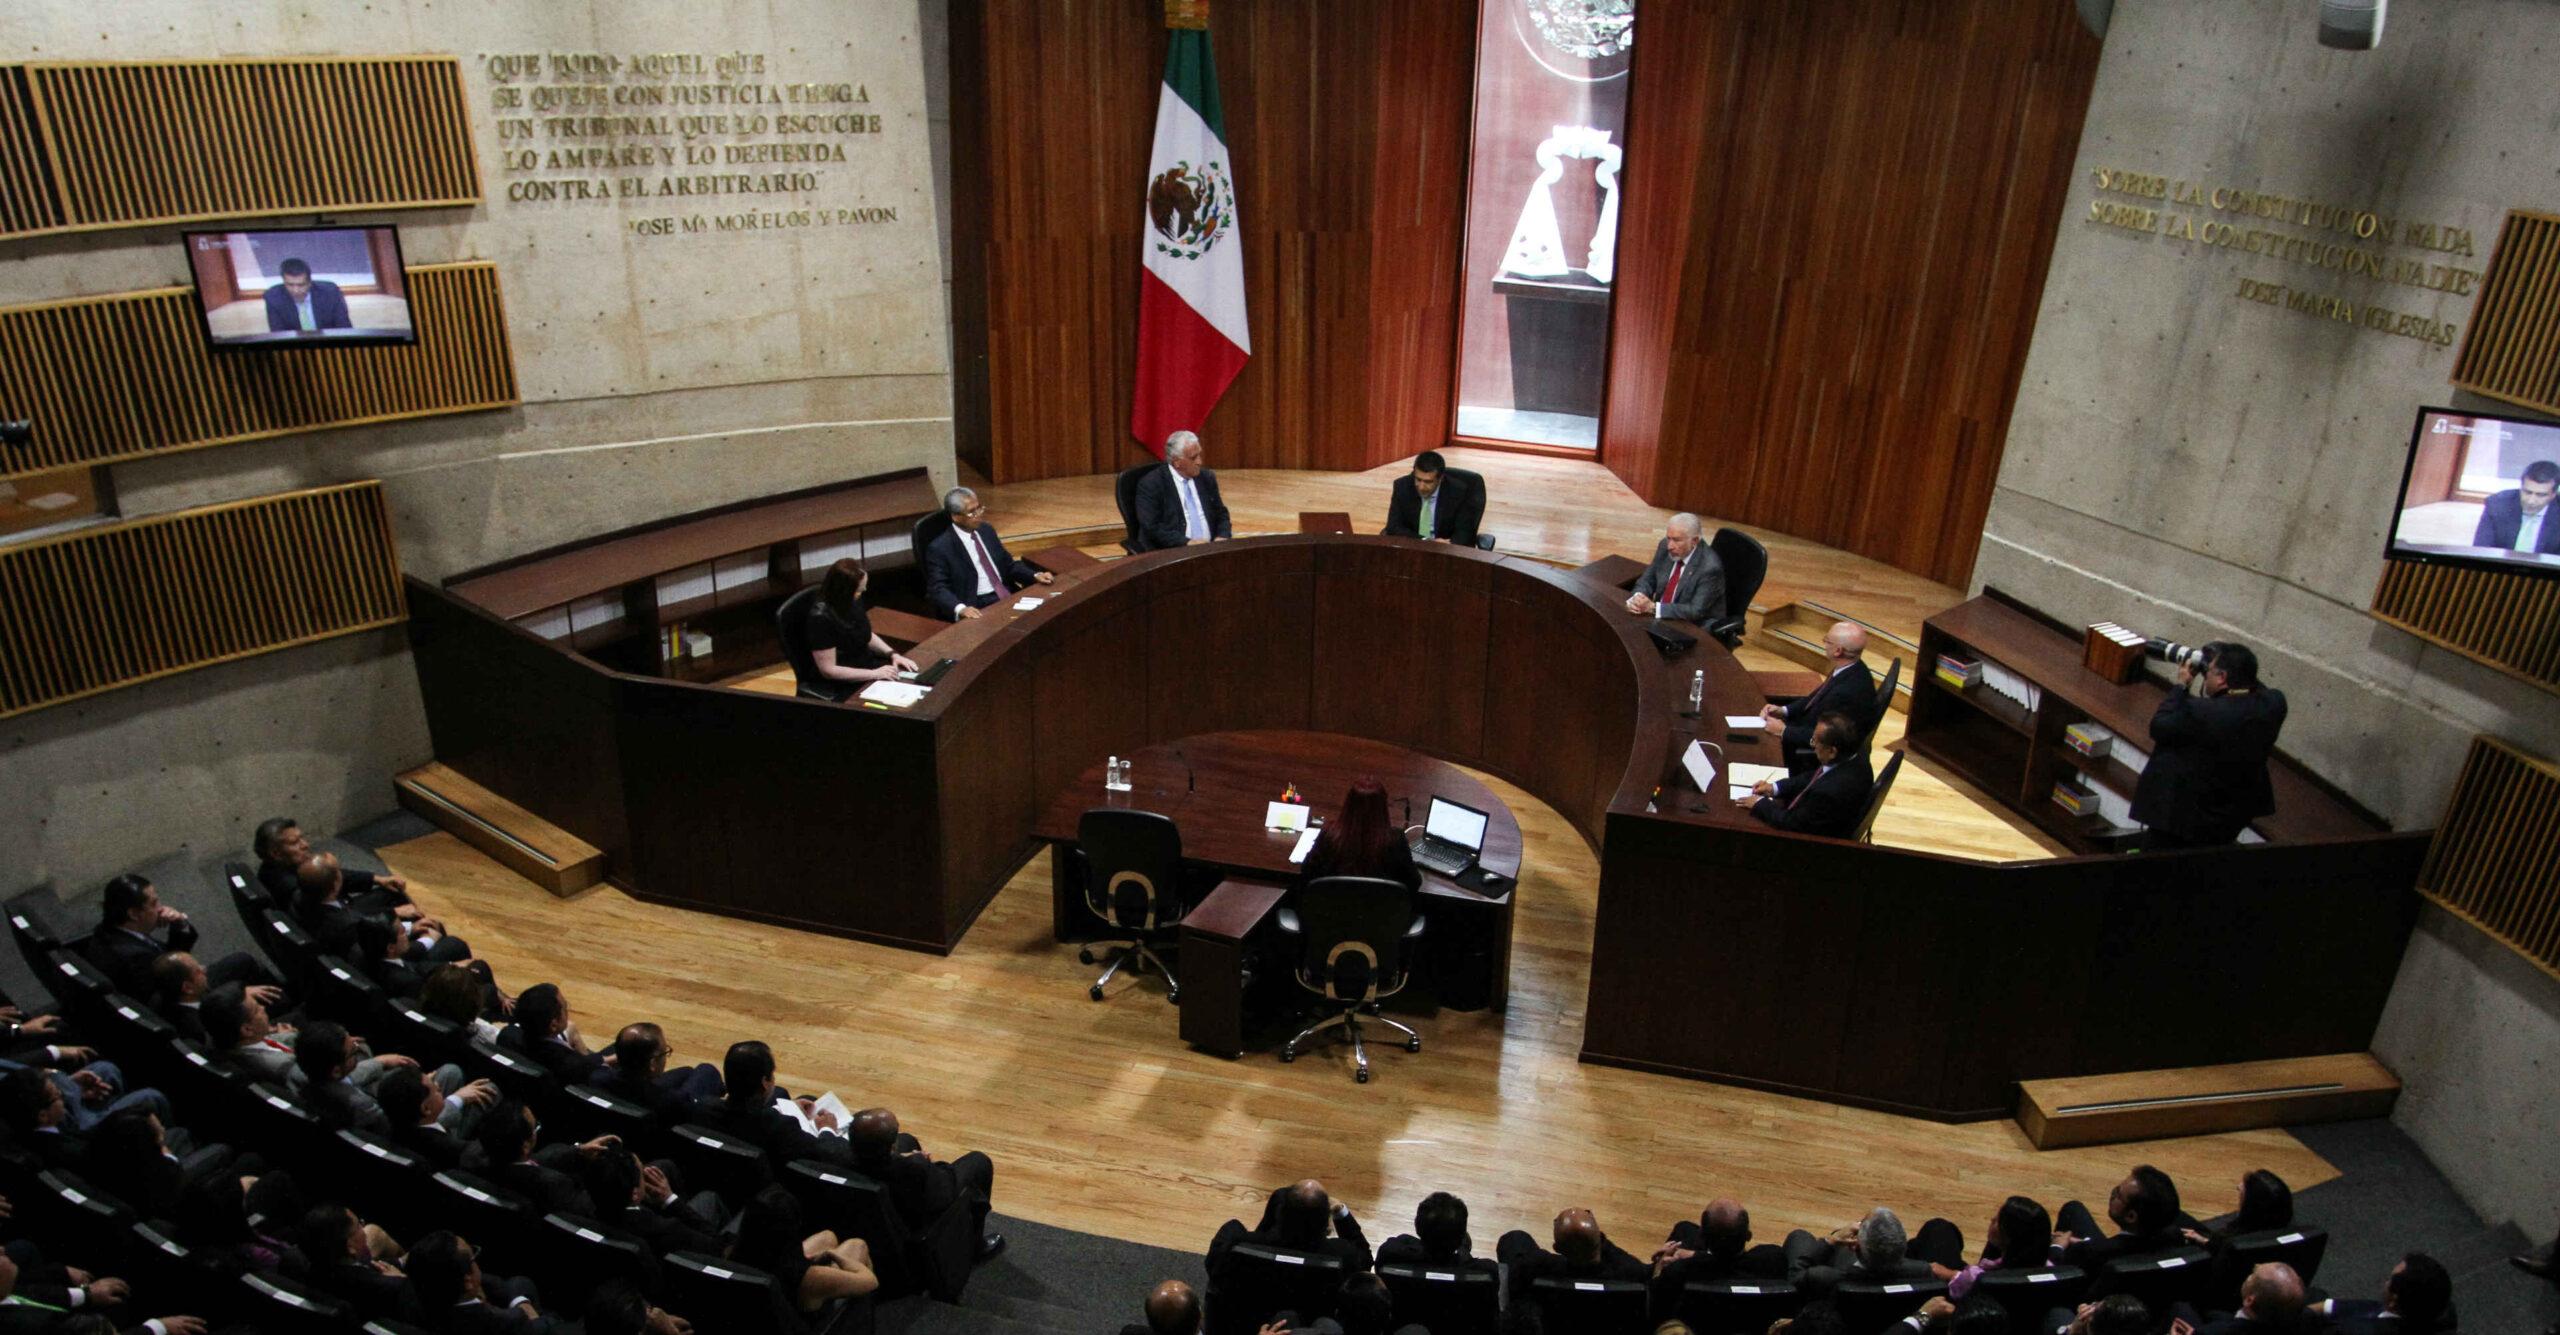 ¿Los partidos se salen con la suya? Estas son las fallas de la justicia electoral en México